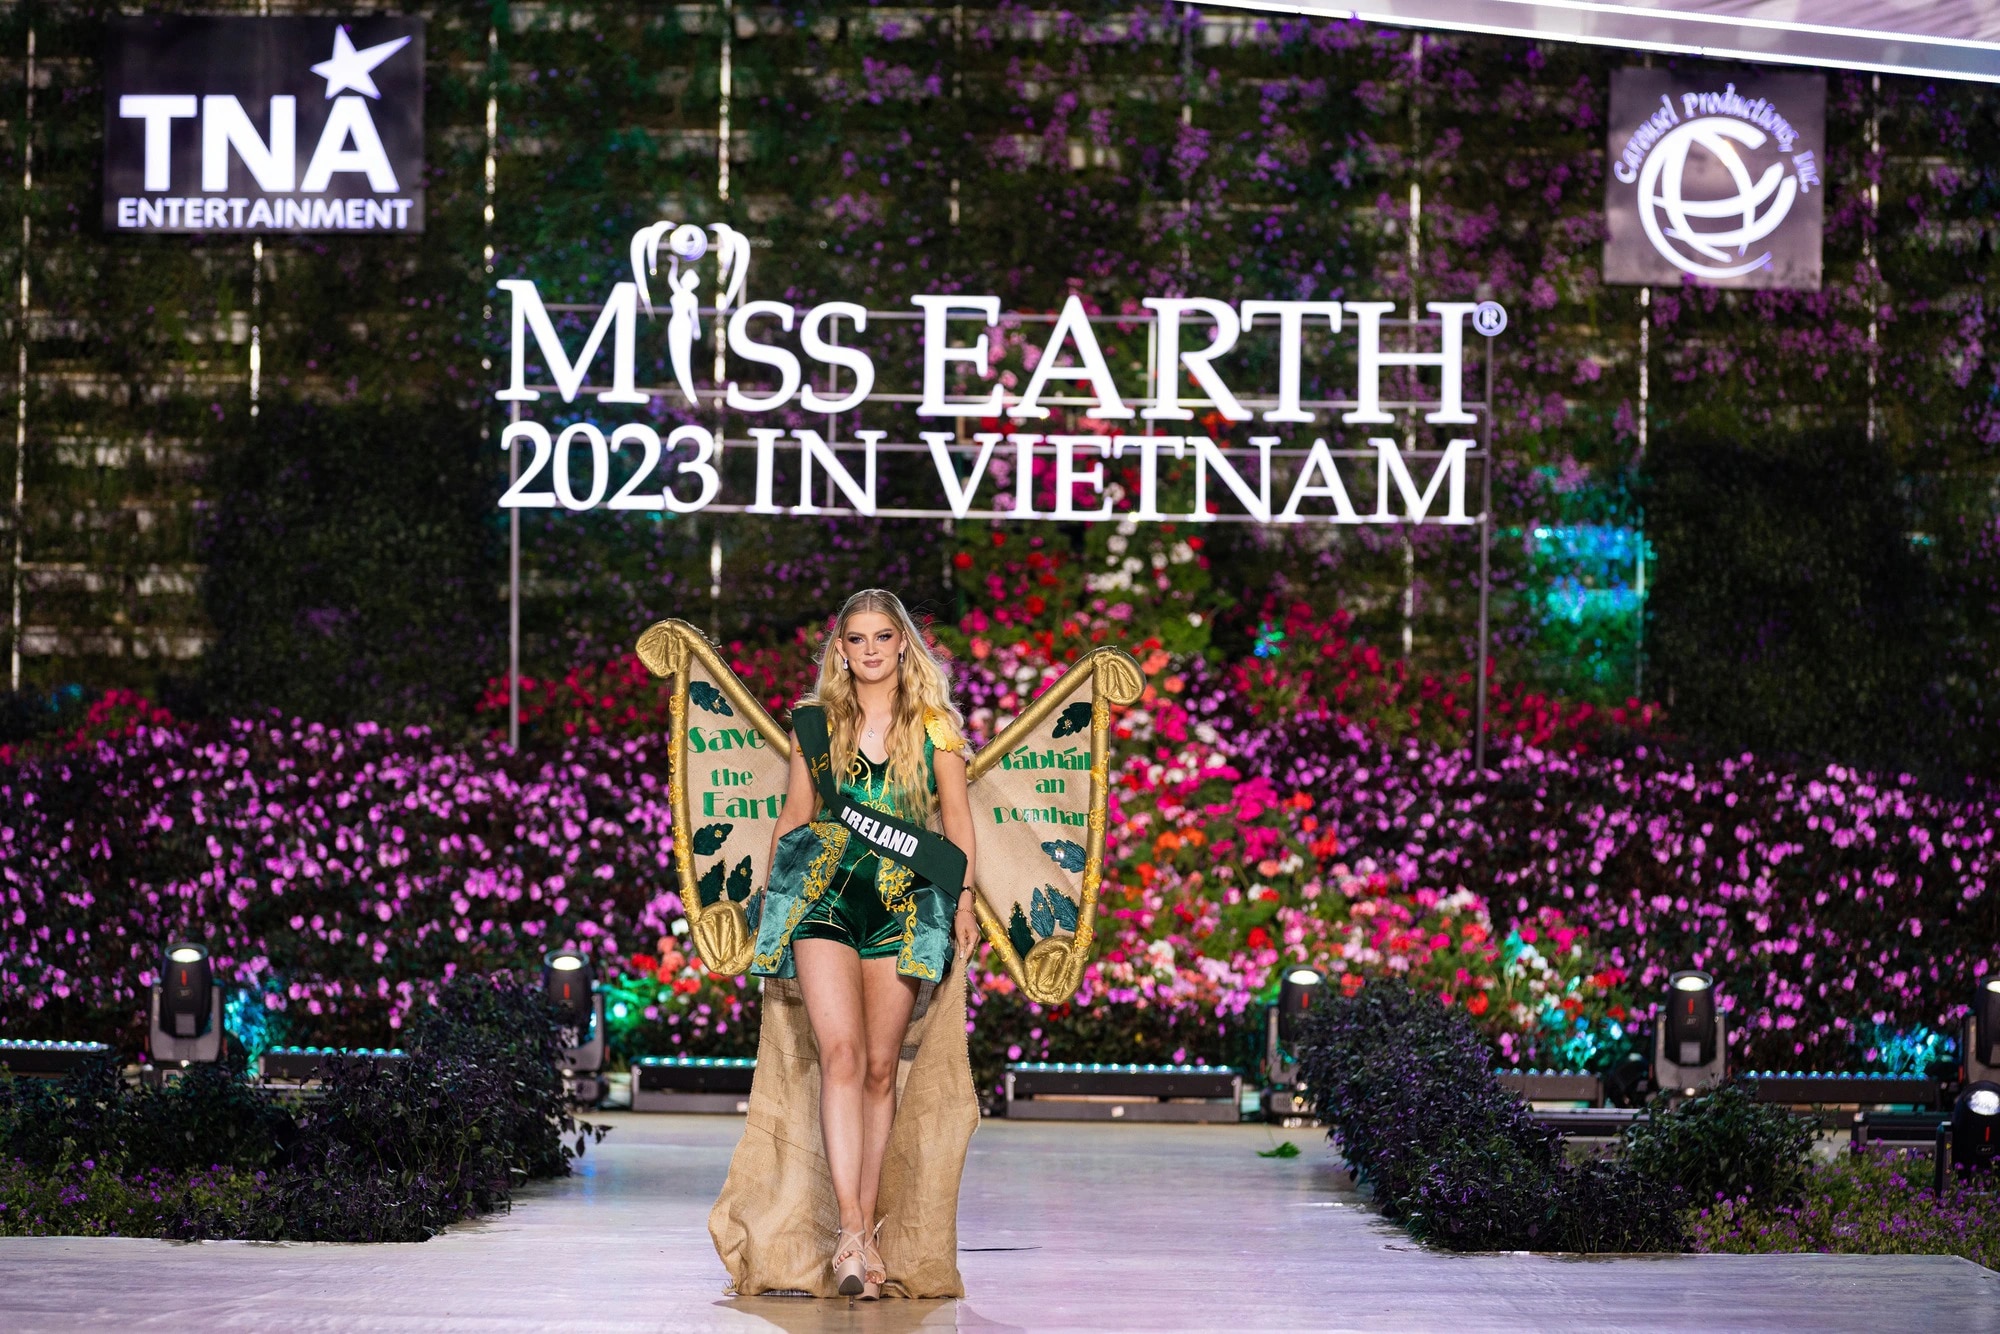 Bán kết Miss Earth 2023 màn trình Trang phục Dân tộc bùng nổ hình ảnh cỏ hoa, muông thú - Ảnh 23.